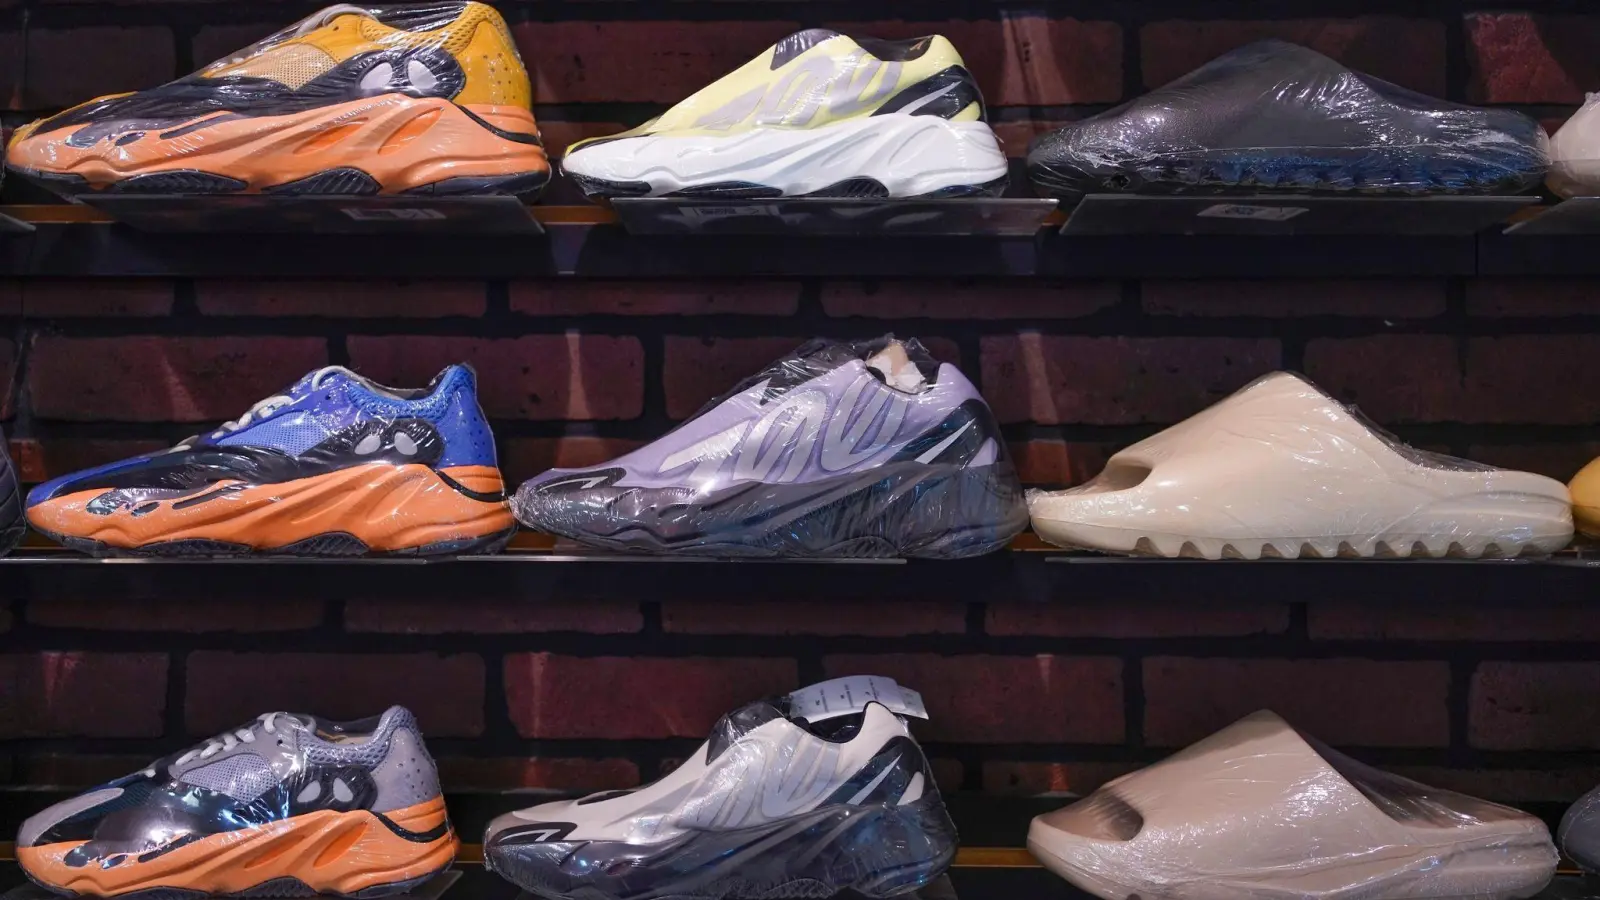 Yeezy-Schuhe von Adidas sind in einem Schuhgeschäft ausgestellt. (Foto: Seth Wenig/AP/dpa/Archivbild)